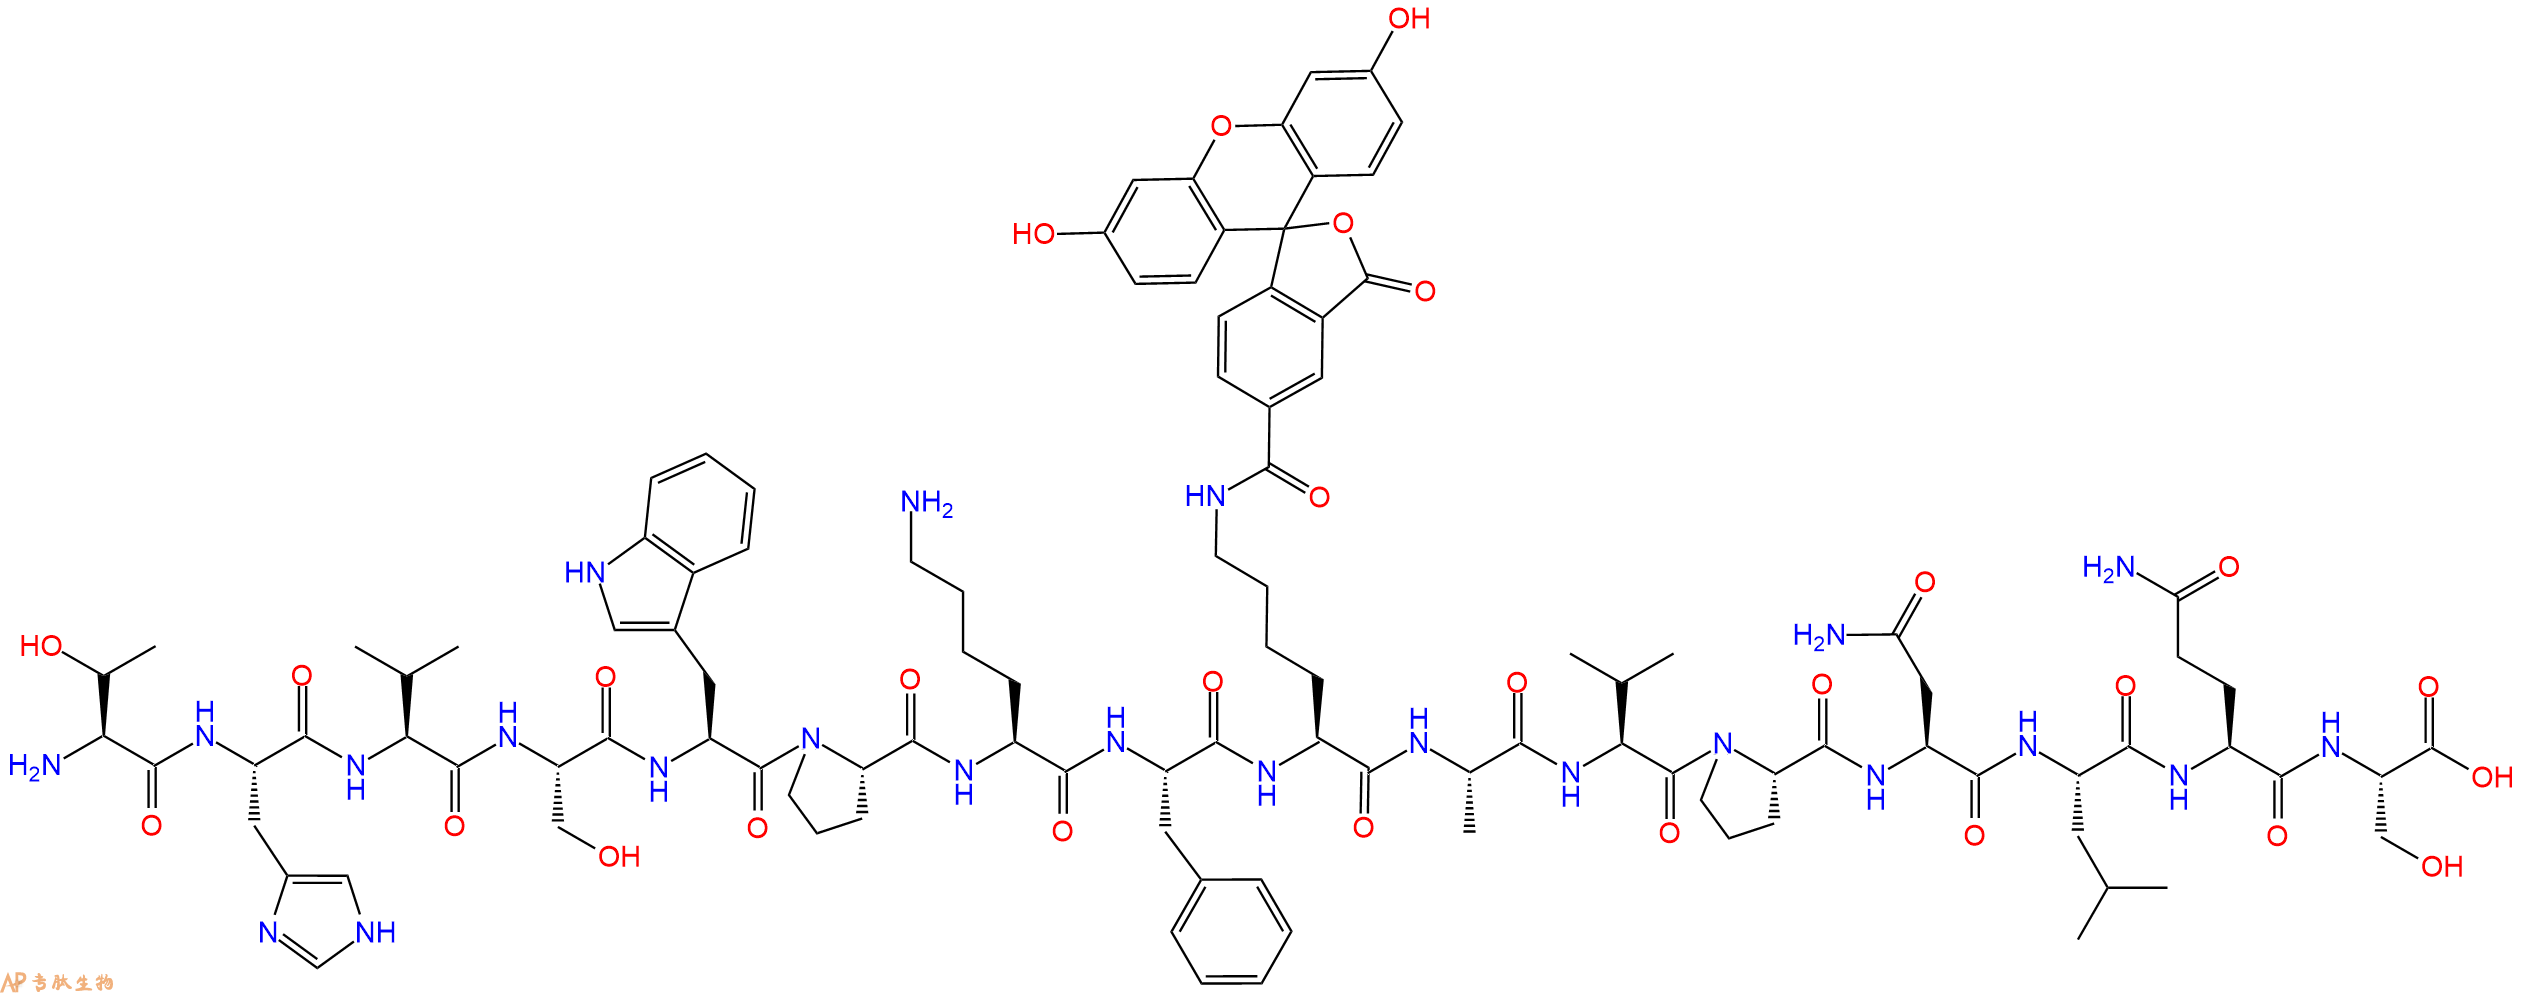 专肽生物产品H2N-Thr-His-Val-Ser-Trp-Pro-Lys-Phe-Lys(5Fam)-Ala-